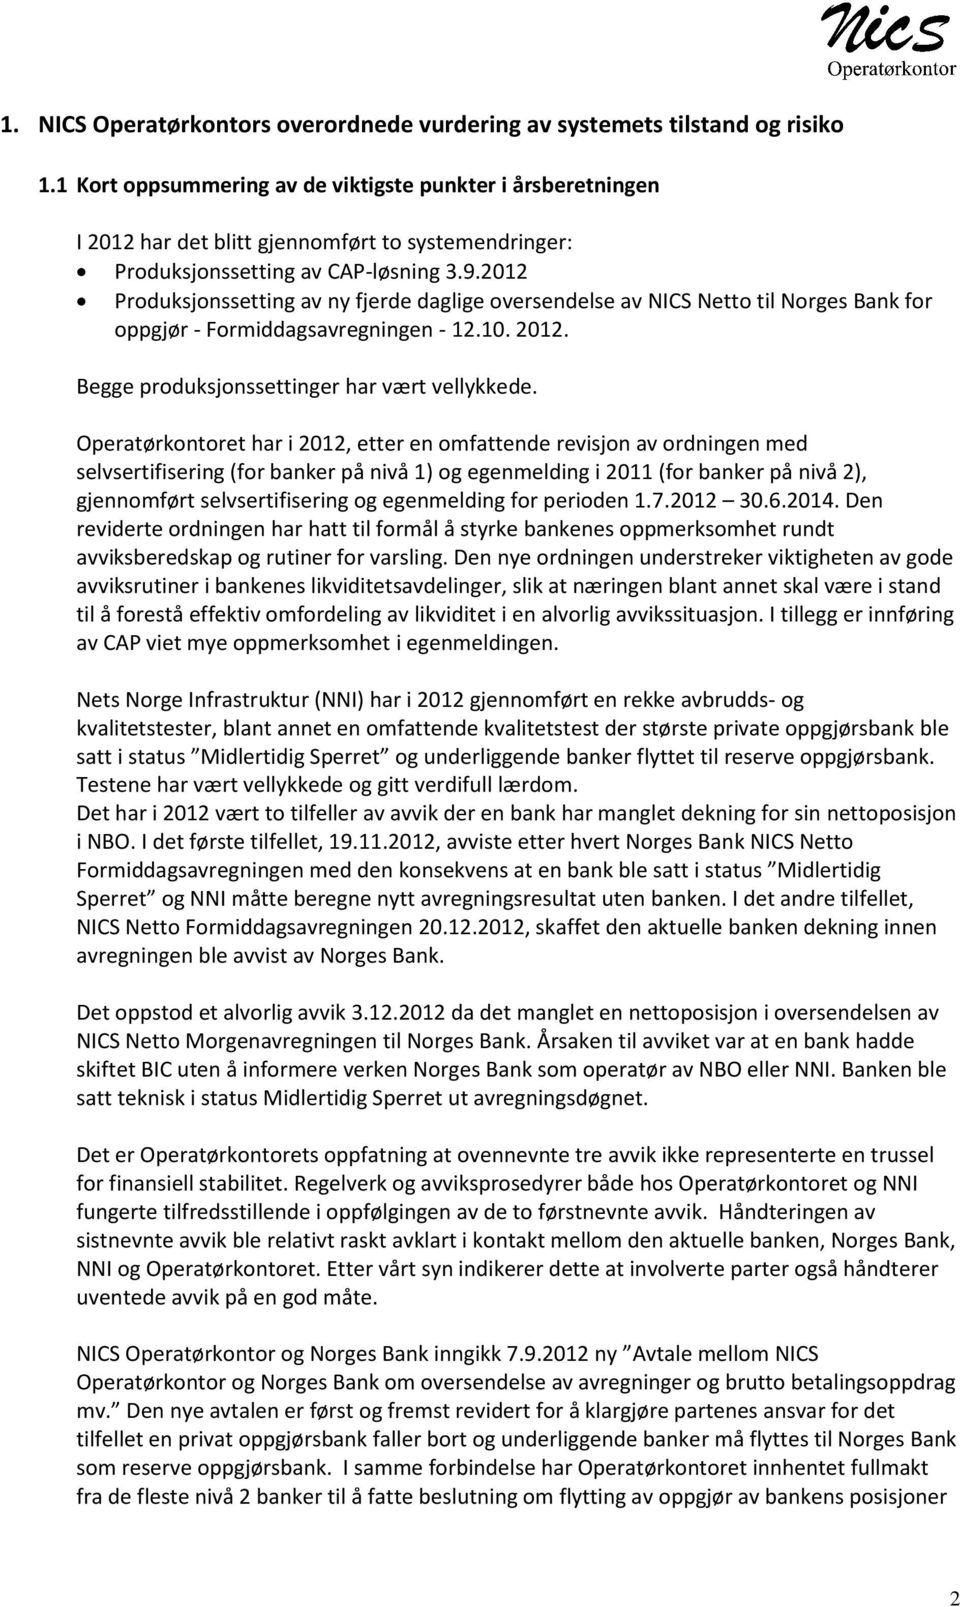 2012 Produksjonssetting av ny fjerde daglige oversendelse av NICS Netto til Norges Bank for oppgjør - Formiddagsavregningen - 12.10. 2012. Begge produksjonssettinger har vært vellykkede.